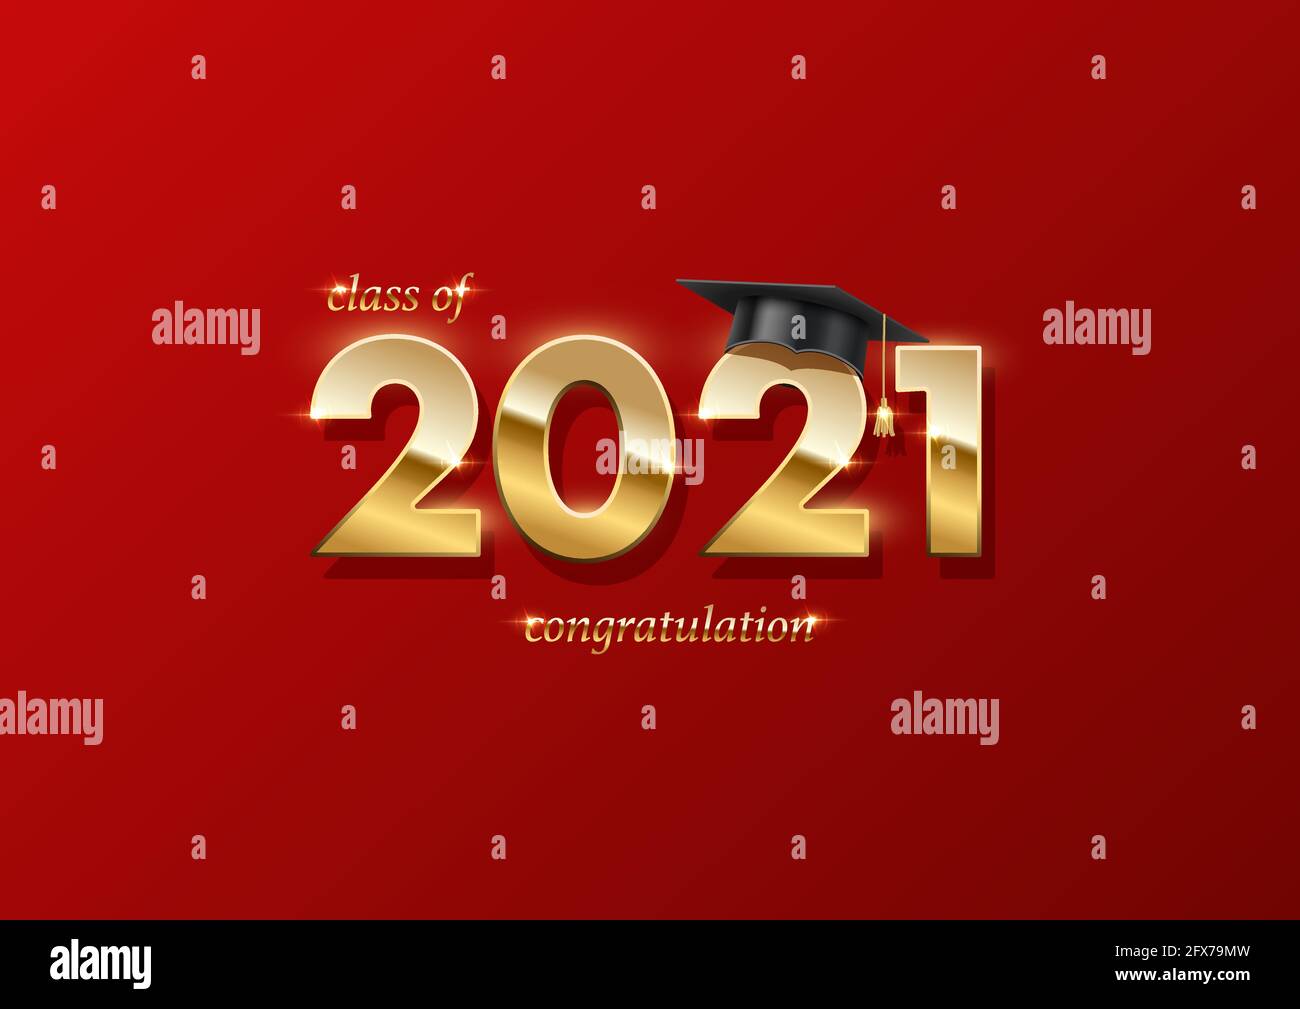 bannière de la cérémonie de remise des diplômes 2021. Concept de récompense avec chapeau académique, numéros d'or et texte sur fond rouge Illustration de Vecteur